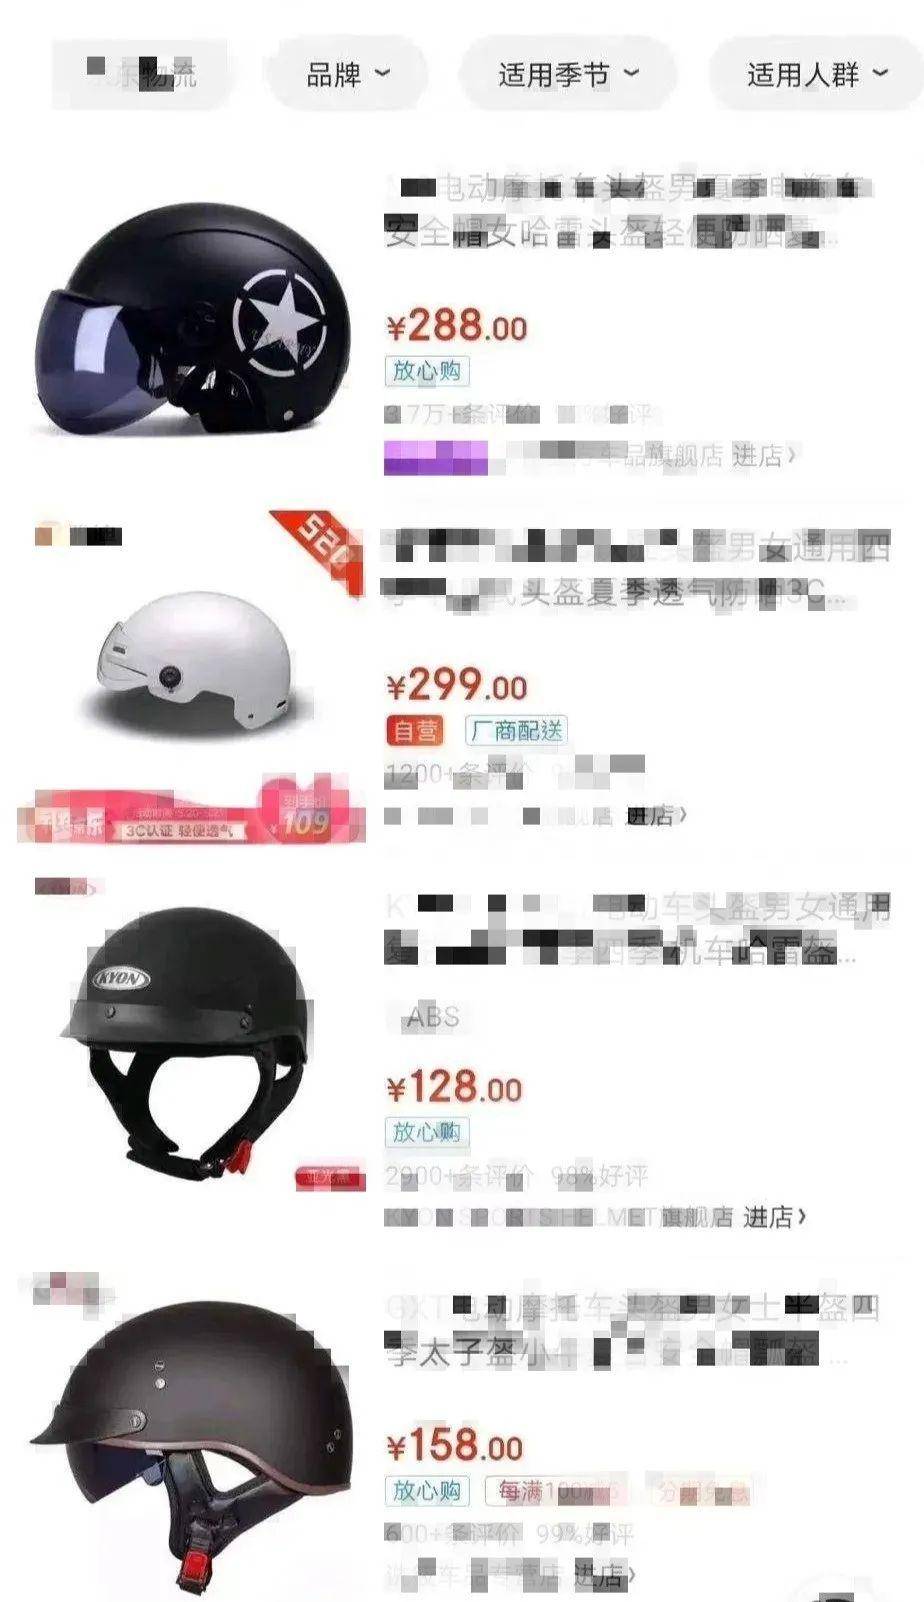 为什么都说买头盔